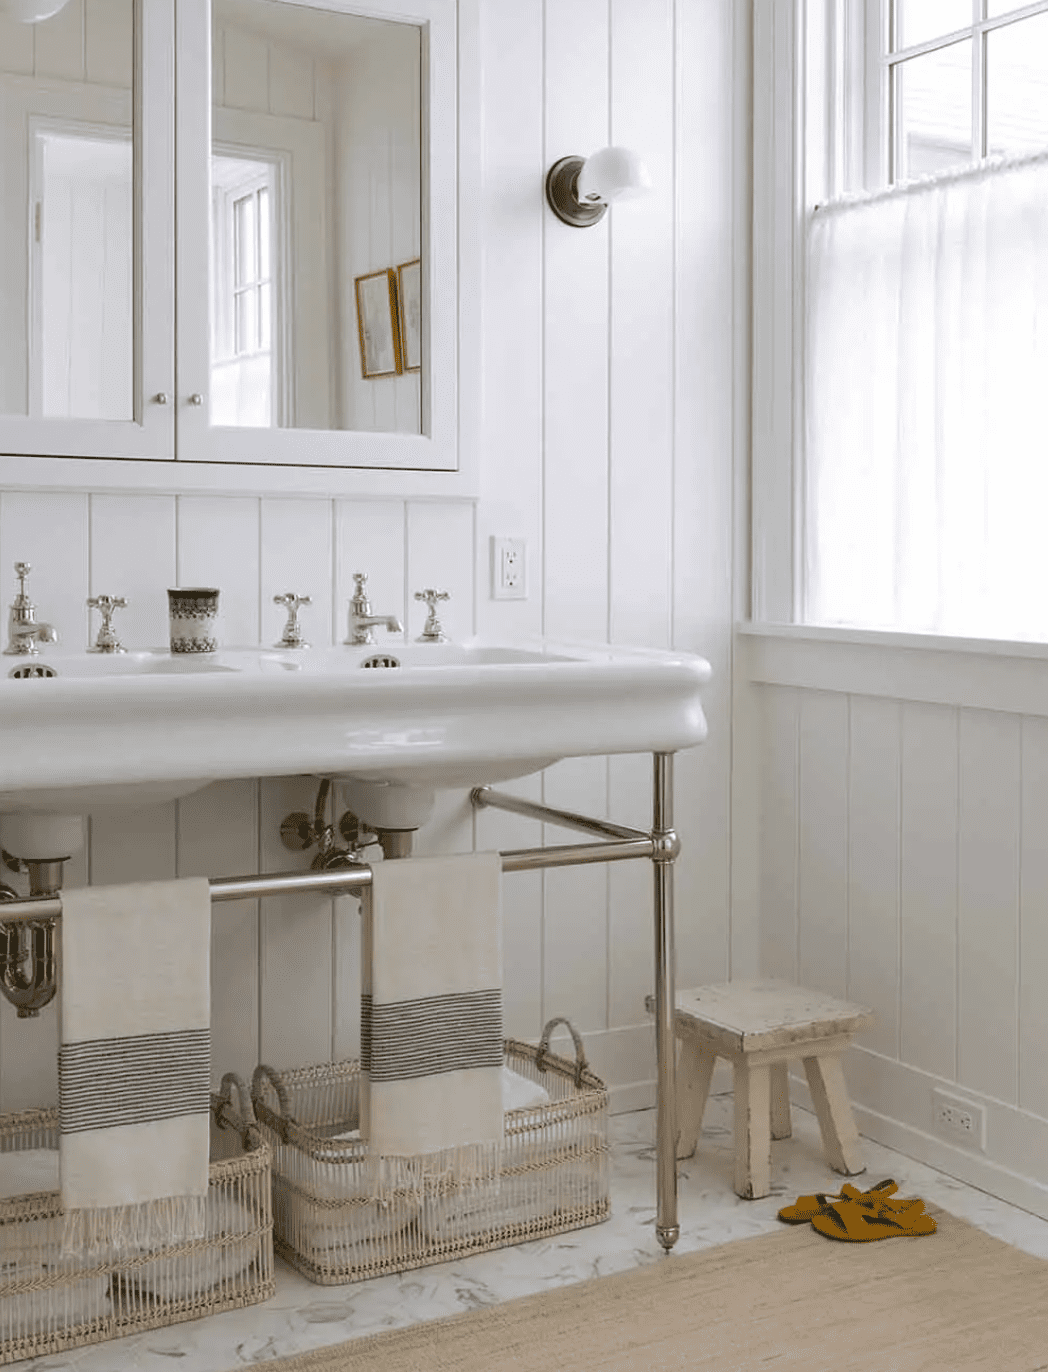 Une salle de bains blanche avec des sols en marbre blanc, des murs revêtus de bois blanc et une armoire à pharmacie blanche.